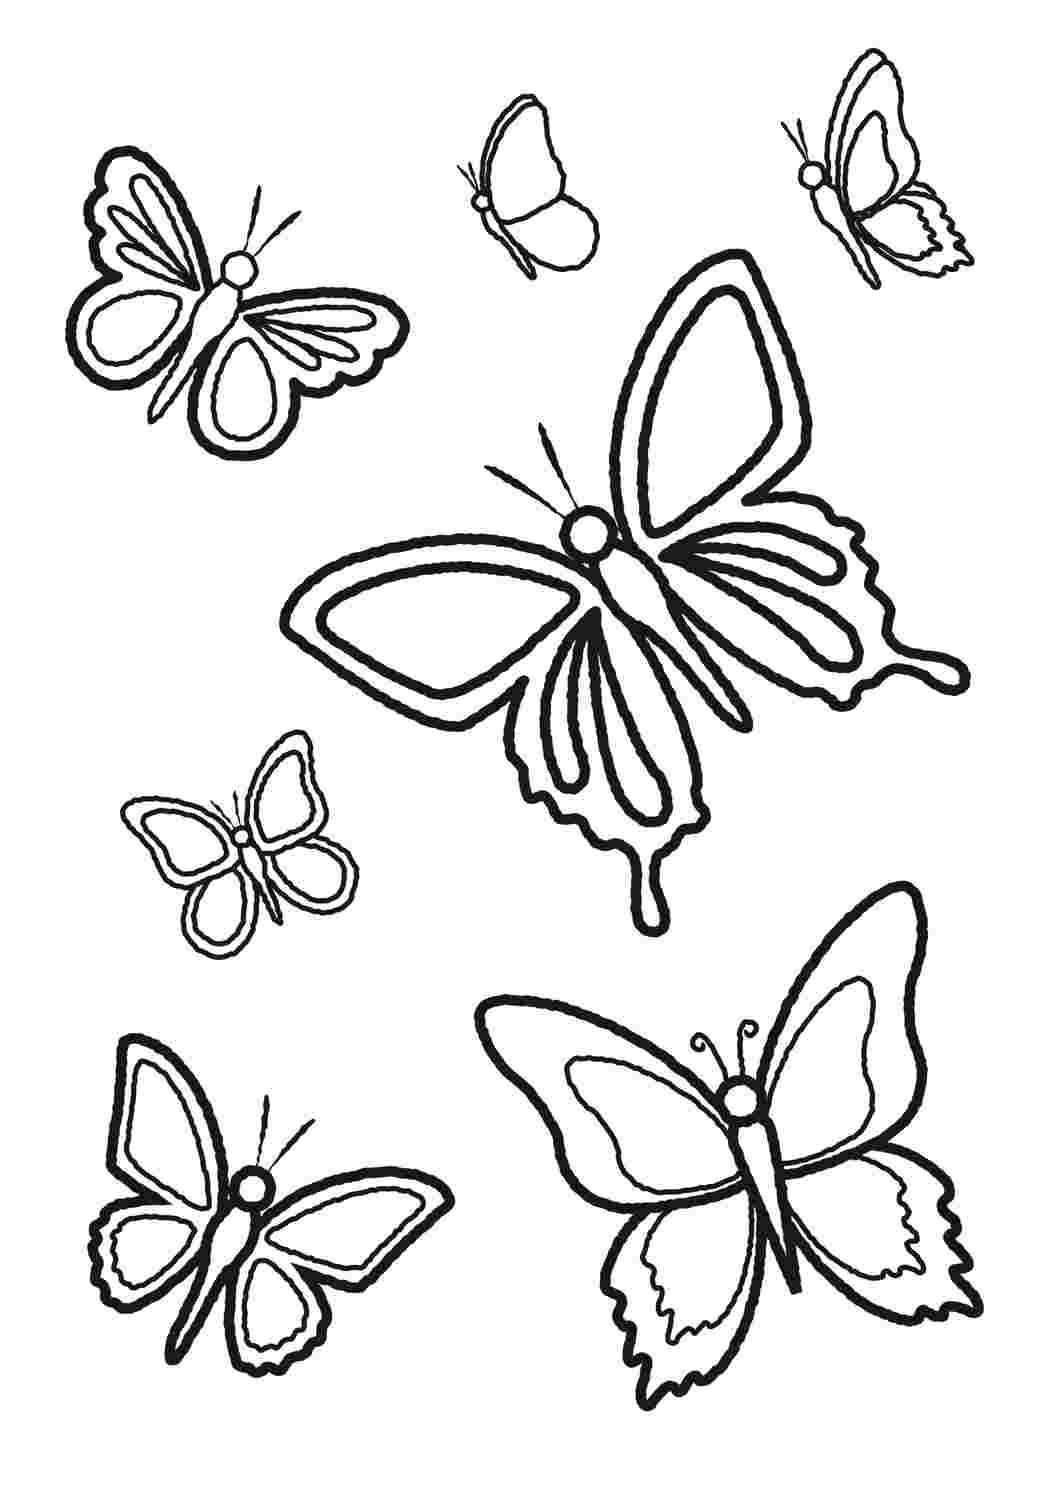 Черно белая бабочка: векторные изображения и иллюстрации, которые можно скачать бесплатно | Freepik